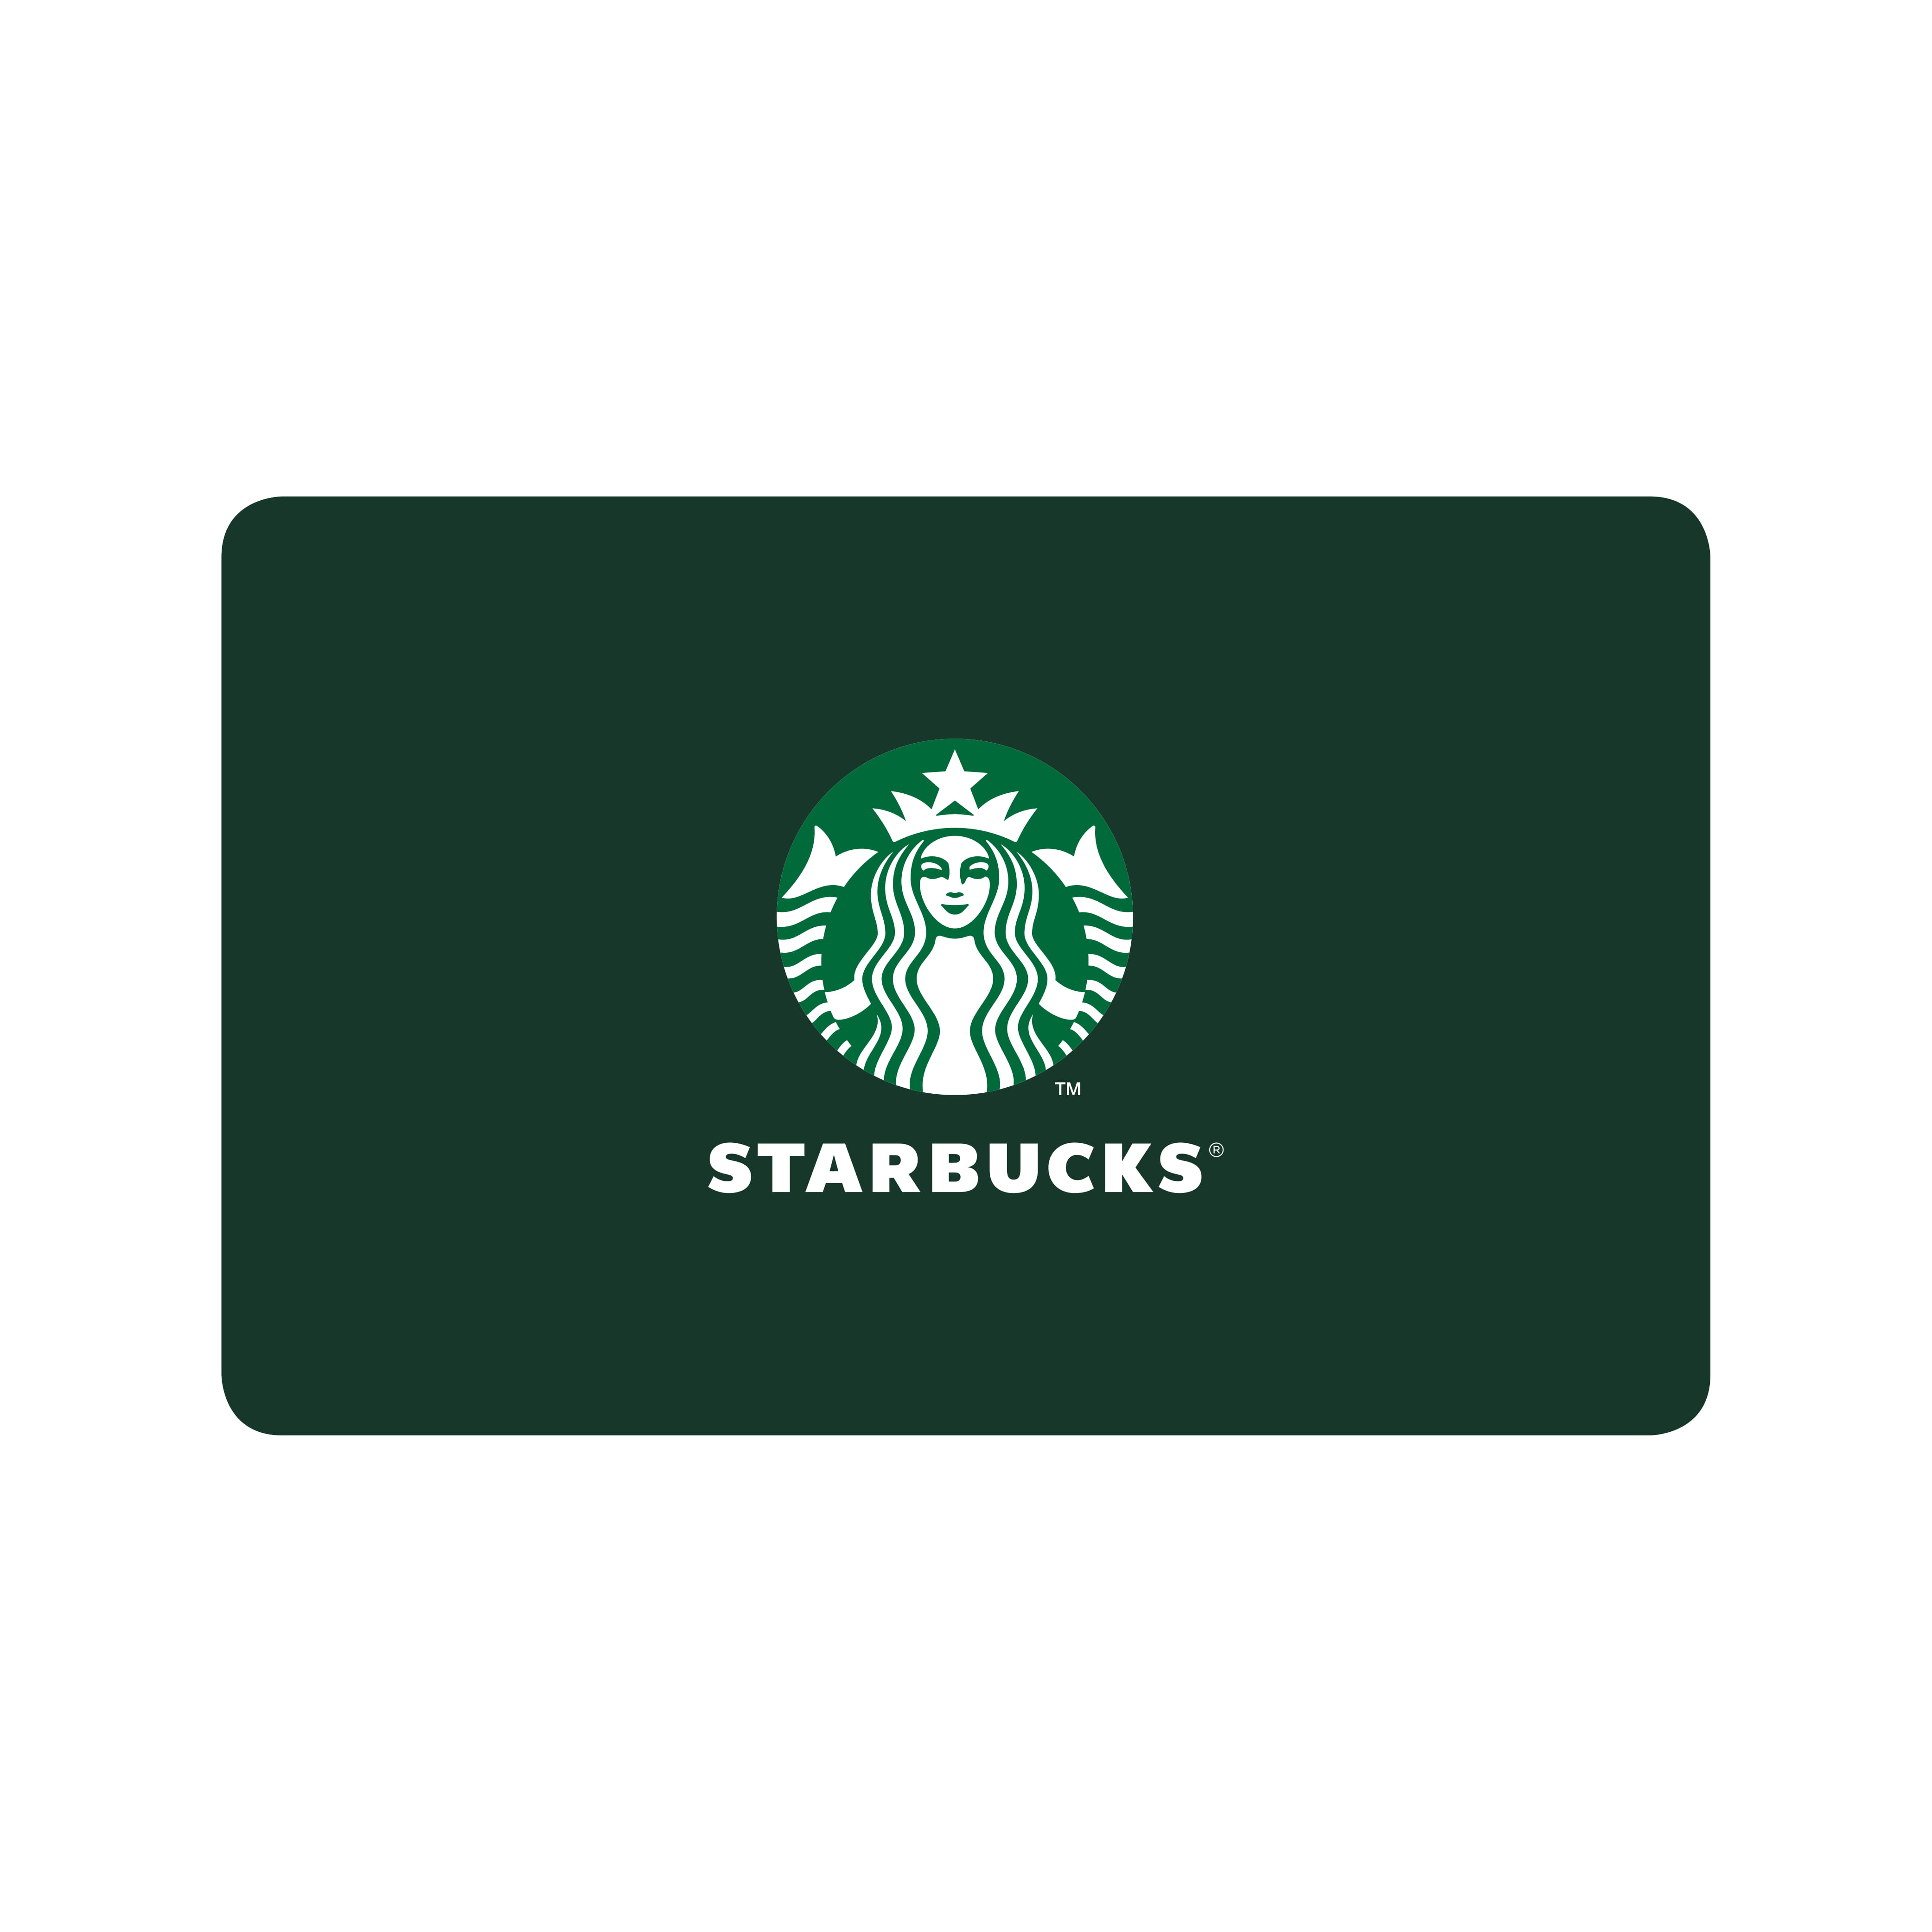 Starbucks gavekort - 200 kr